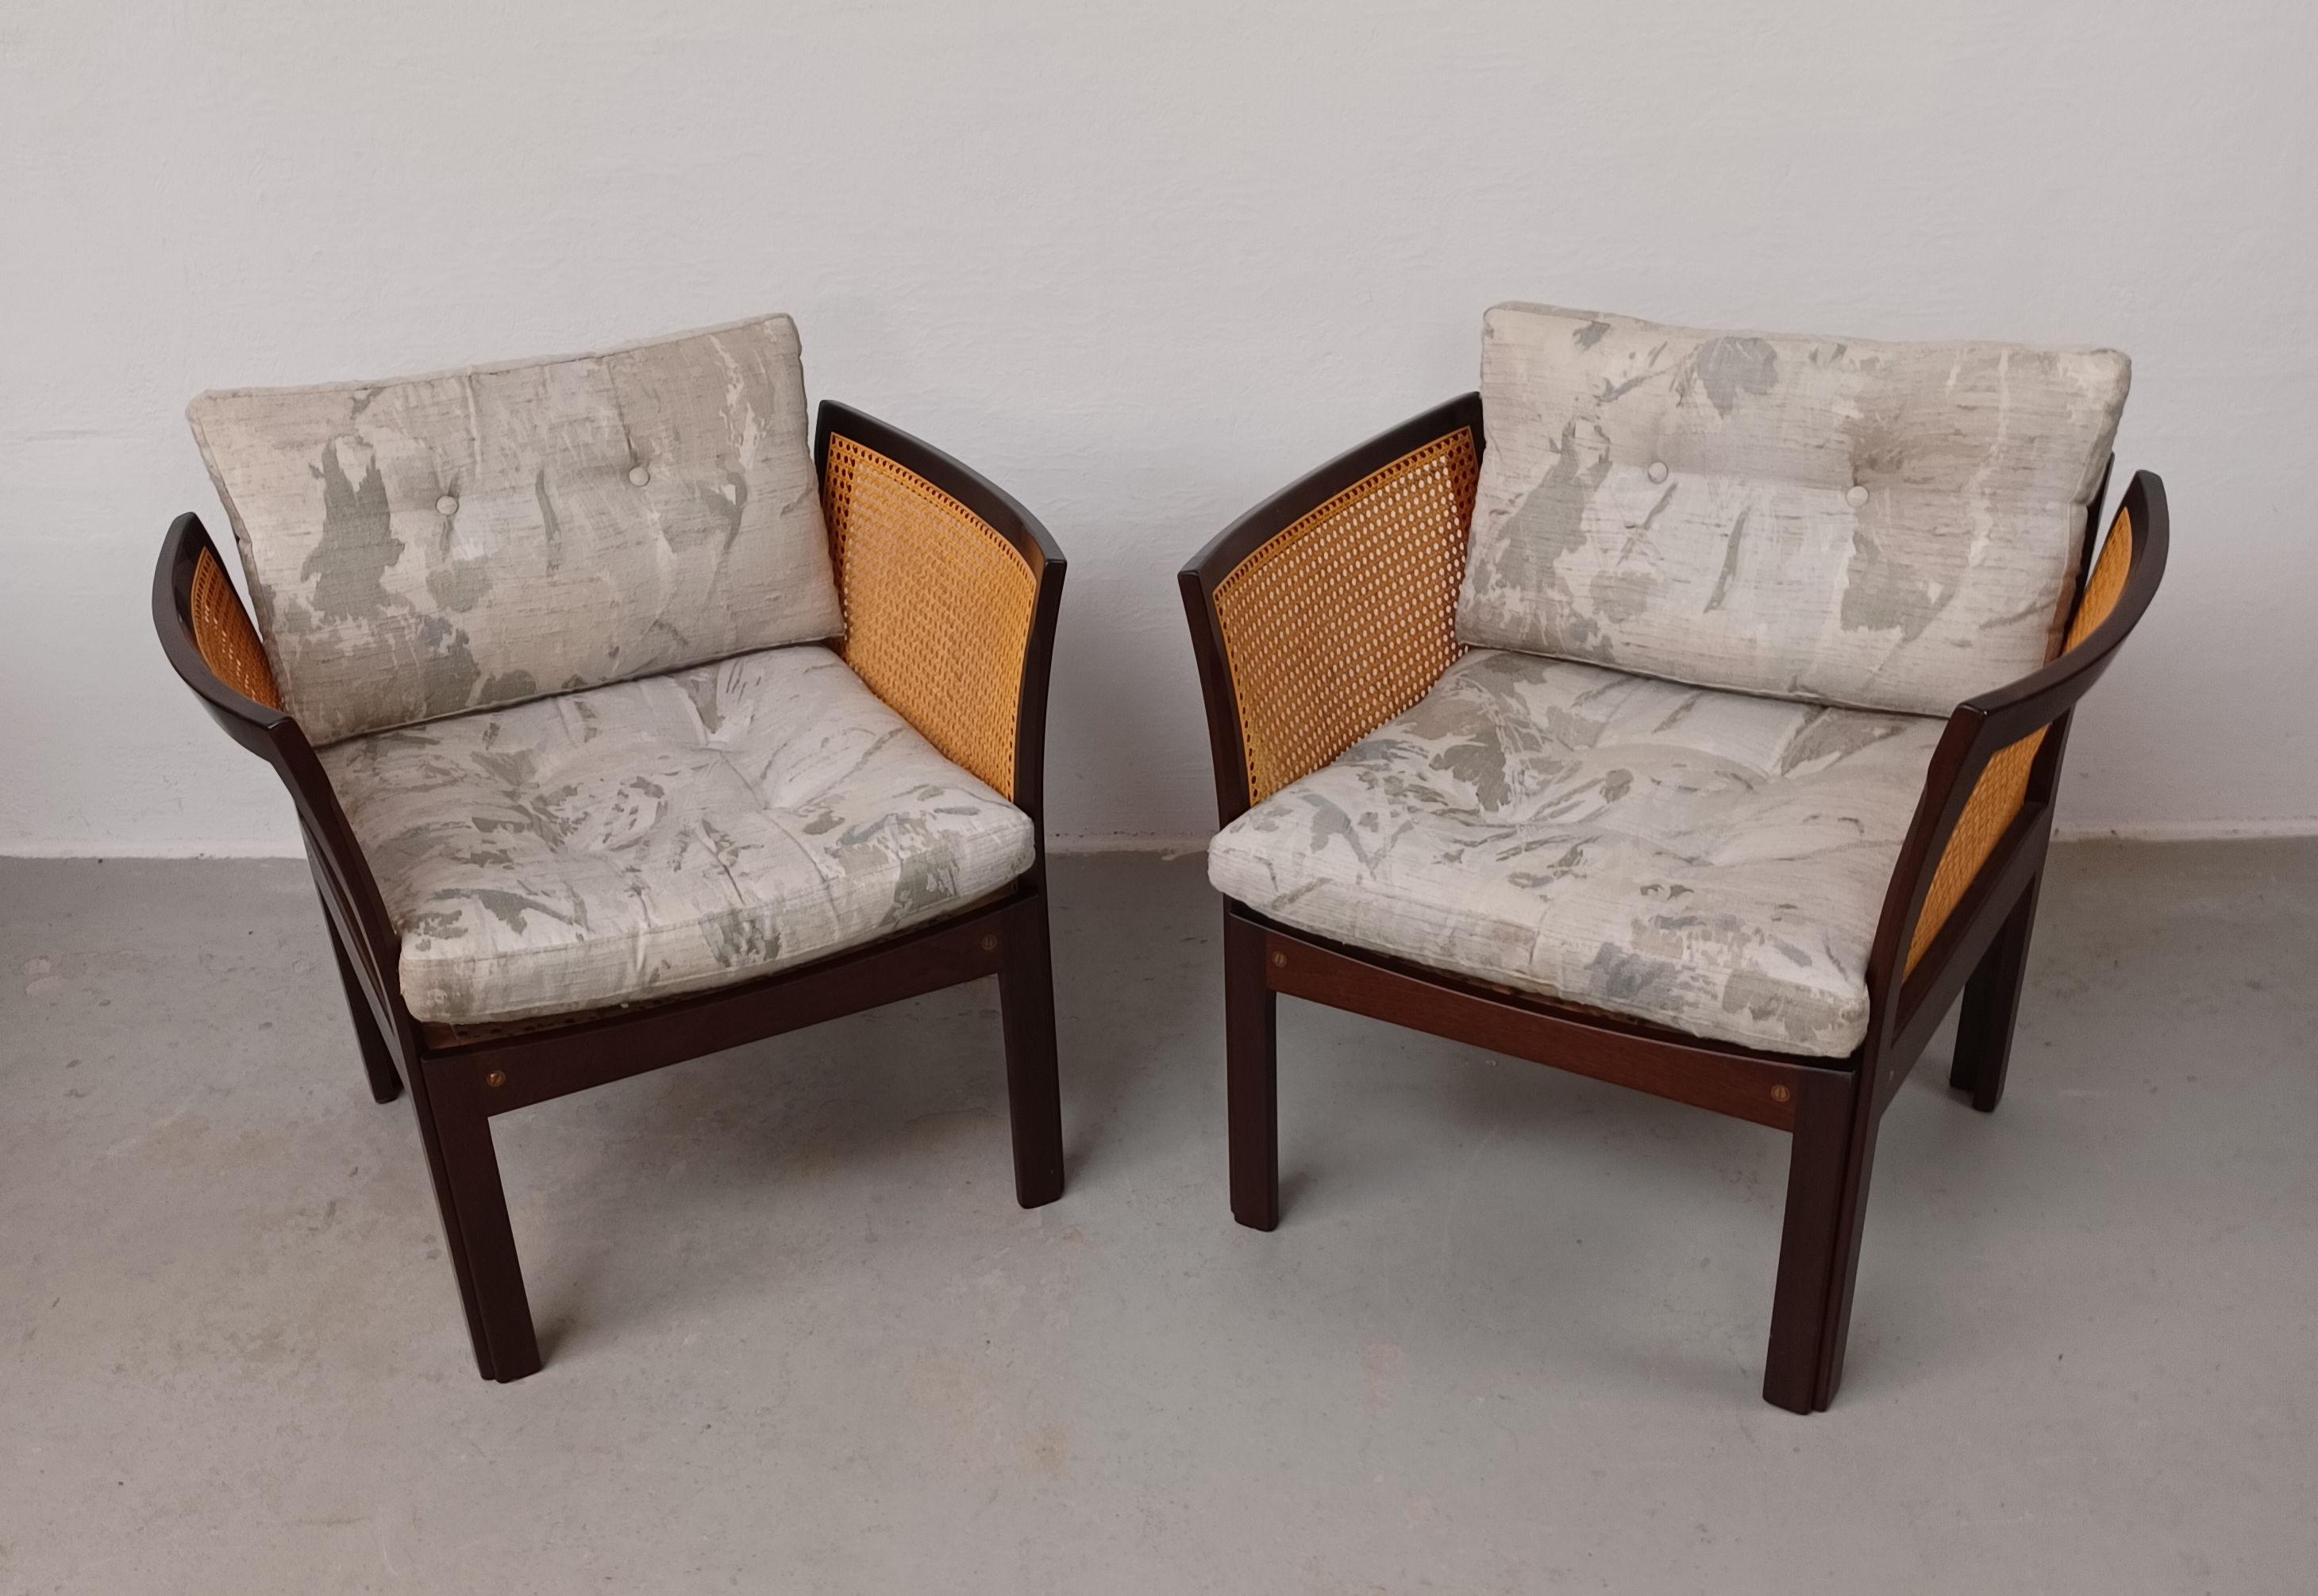 Ensemble de deux fauteuils Illum Vikkelso Danish Plexus en acajou

La série de fauteuils Plexus a été conçue par Illum Wikkelsø dans les années 1960 et fabriquée dans les années 1960-1970 par CFC Silkeborg au Danemark.

L'ensemble des fauteuils a